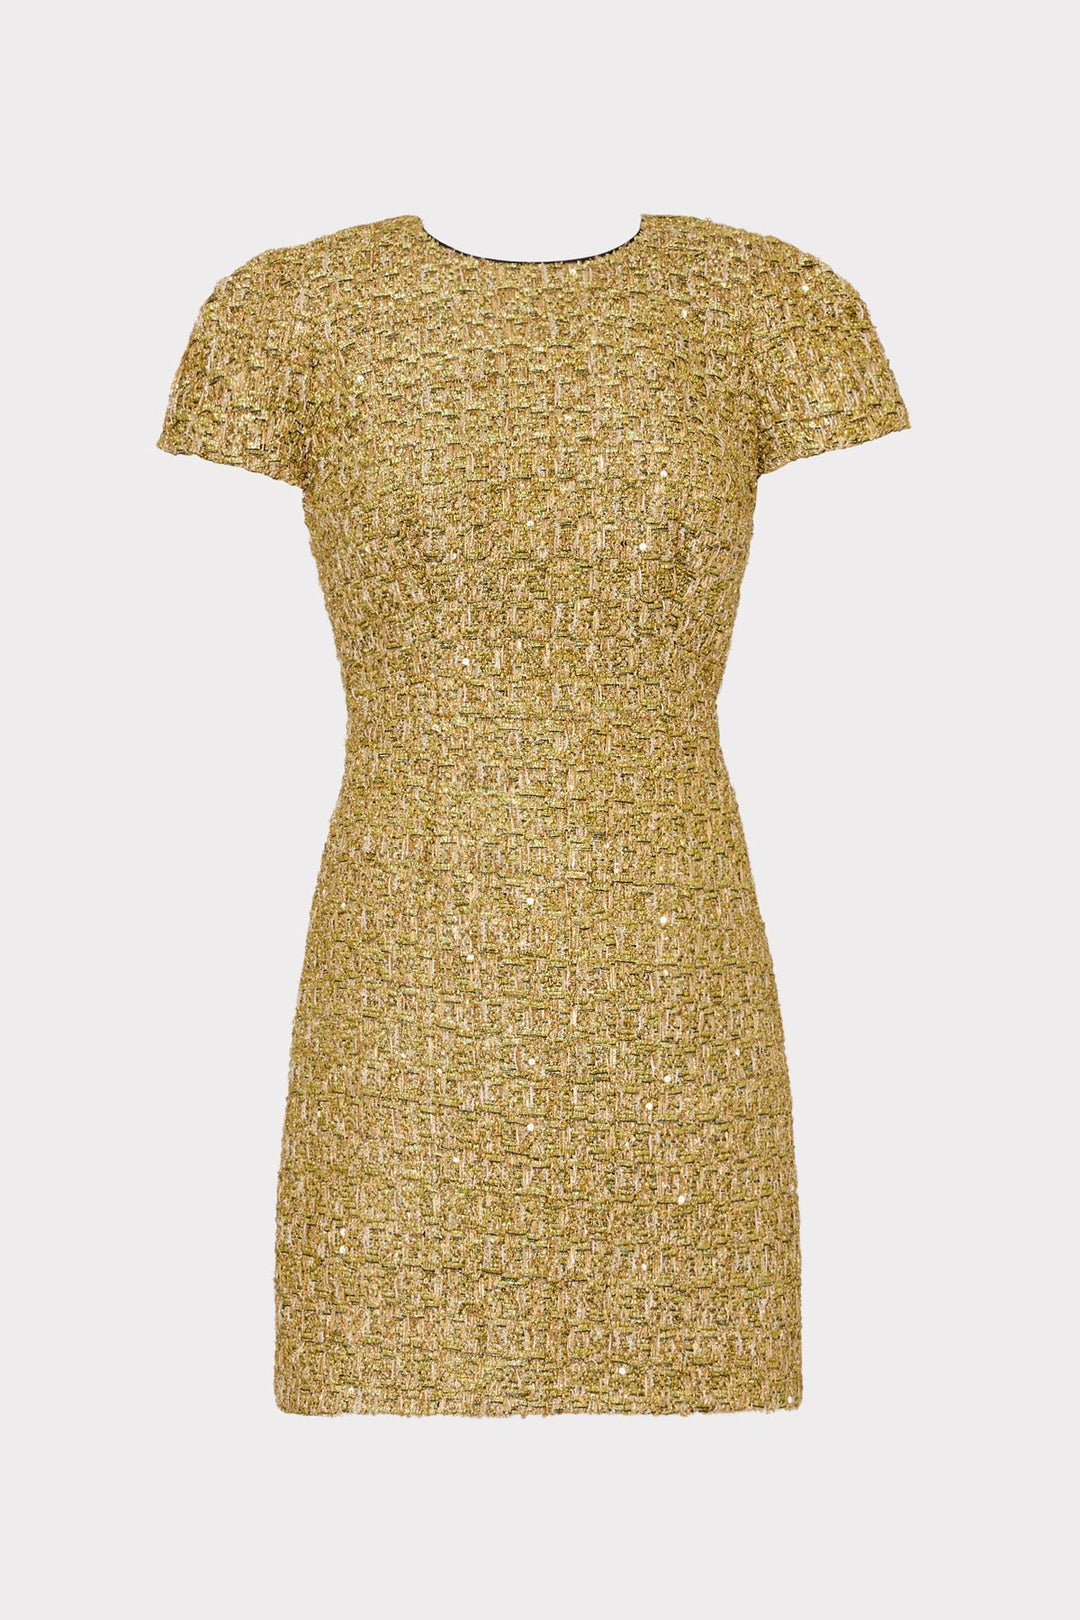 Rowen Metallic Tweed Dress in Gold